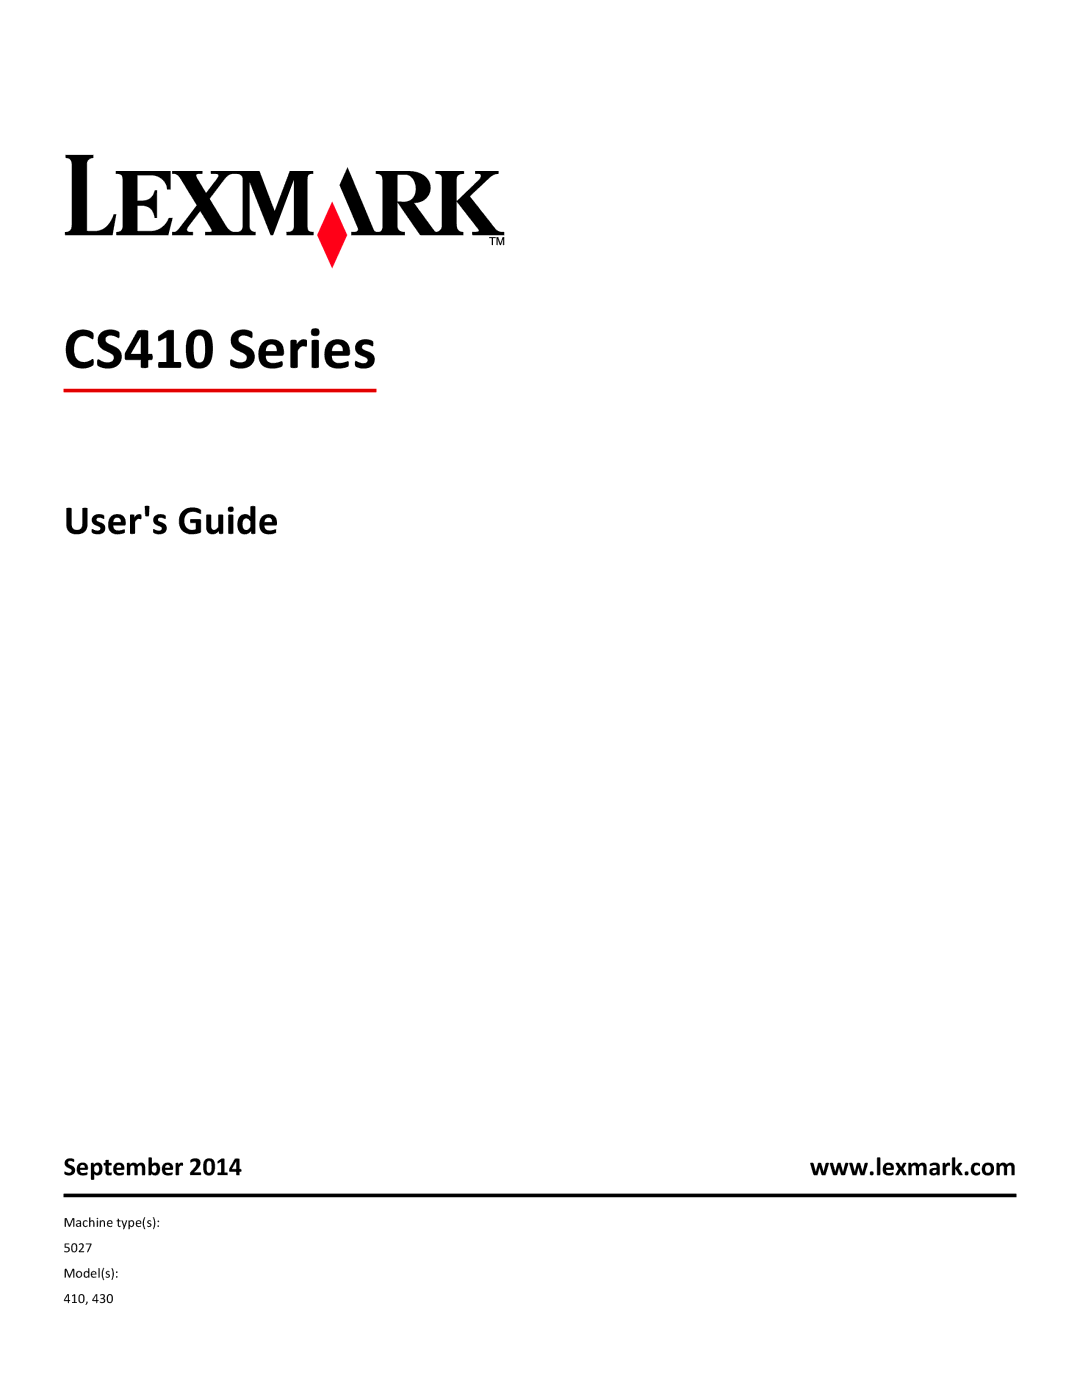 Lexmark CS410 manual Users Guide, September 